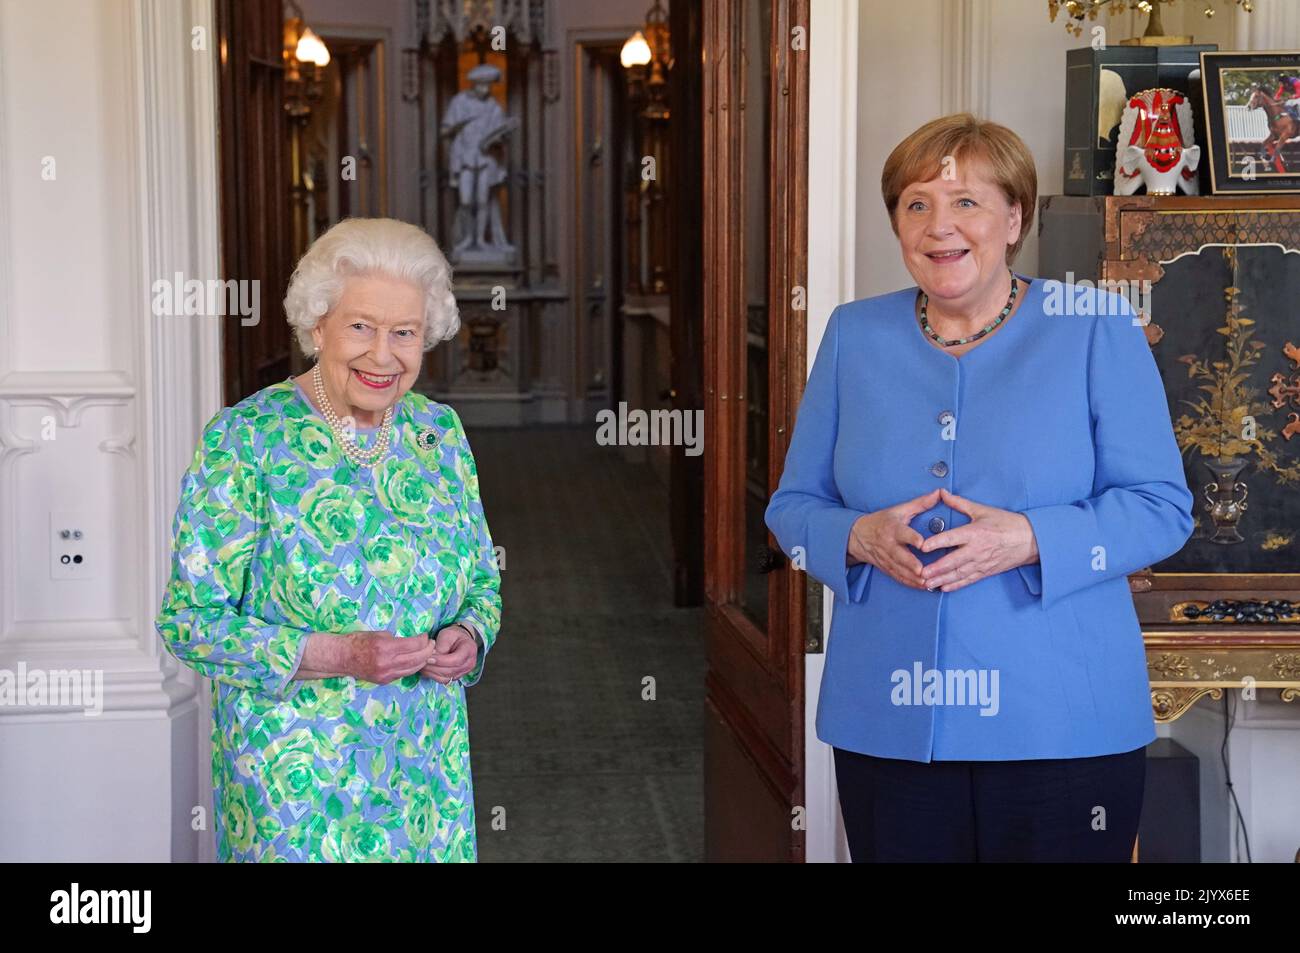 Foto de archivo de fecha 02/07/2021 de la reina Isabel II recibiendo a la canciller de Alemania, Angela Merkel, durante una audiencia en el Castillo de Windsor en Berkshire. La reina murió pacíficamente en Balmoral esta tarde, ha anunciado el Palacio de Buckingham. Fecha de emisión: Jueves 8 de septiembre de 2022. Foto de stock